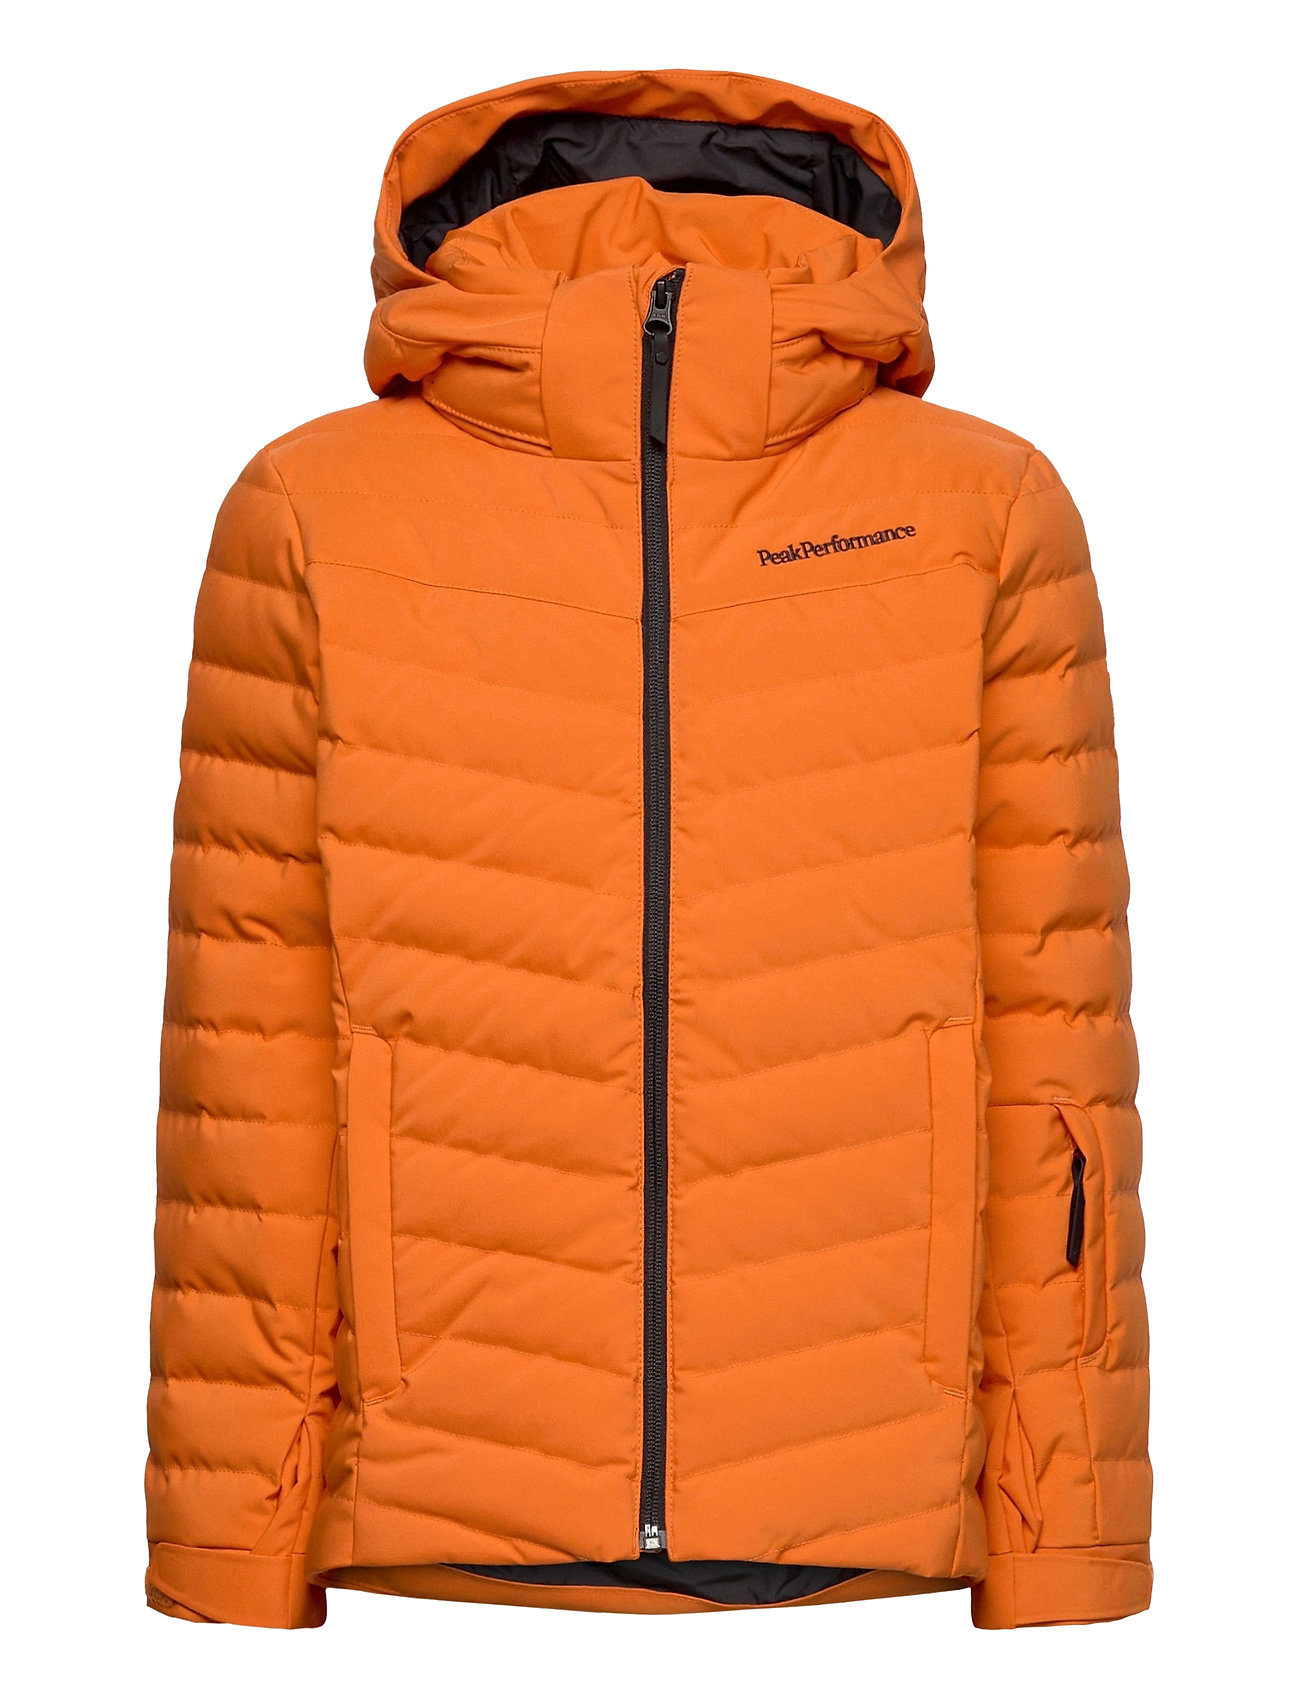 Jr Frost Ski Jacket Cold Blush Foret Jakke Orange Peak Performance